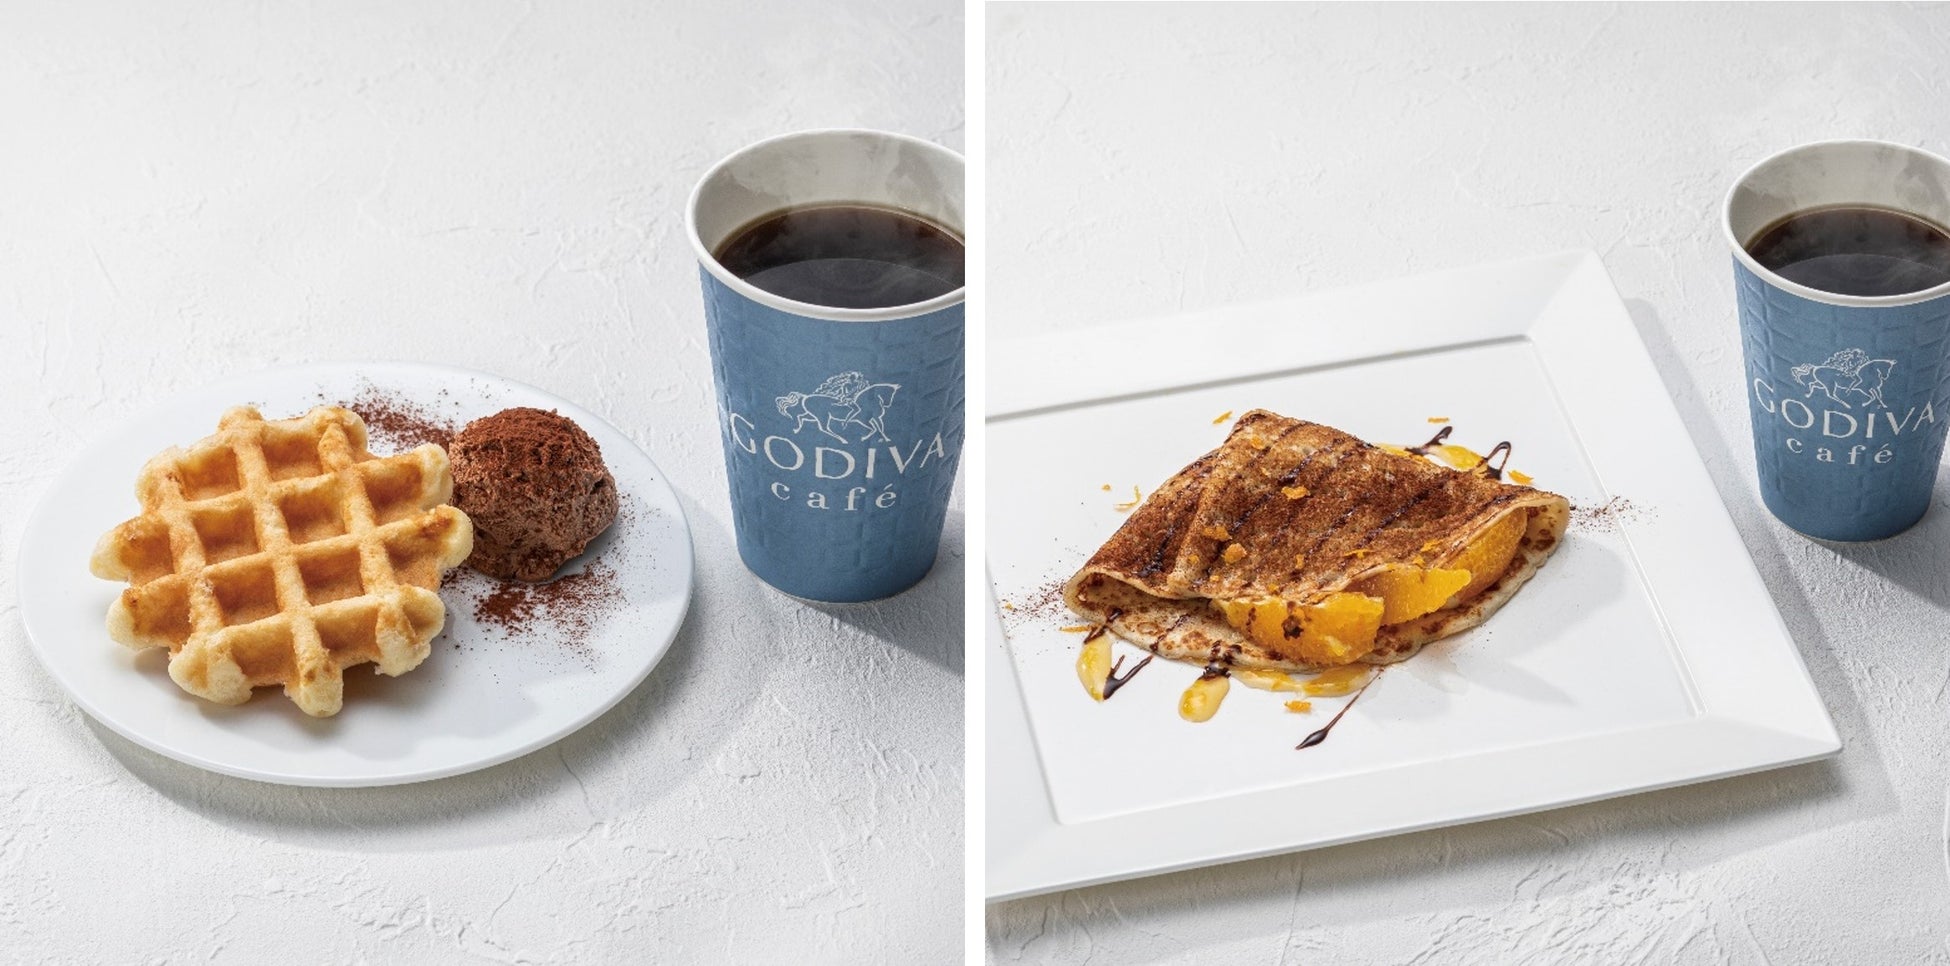 ベルギーワッフル、クレープを選べるモーニング限定セットが新登場「GODIVA caféモーニングセット」